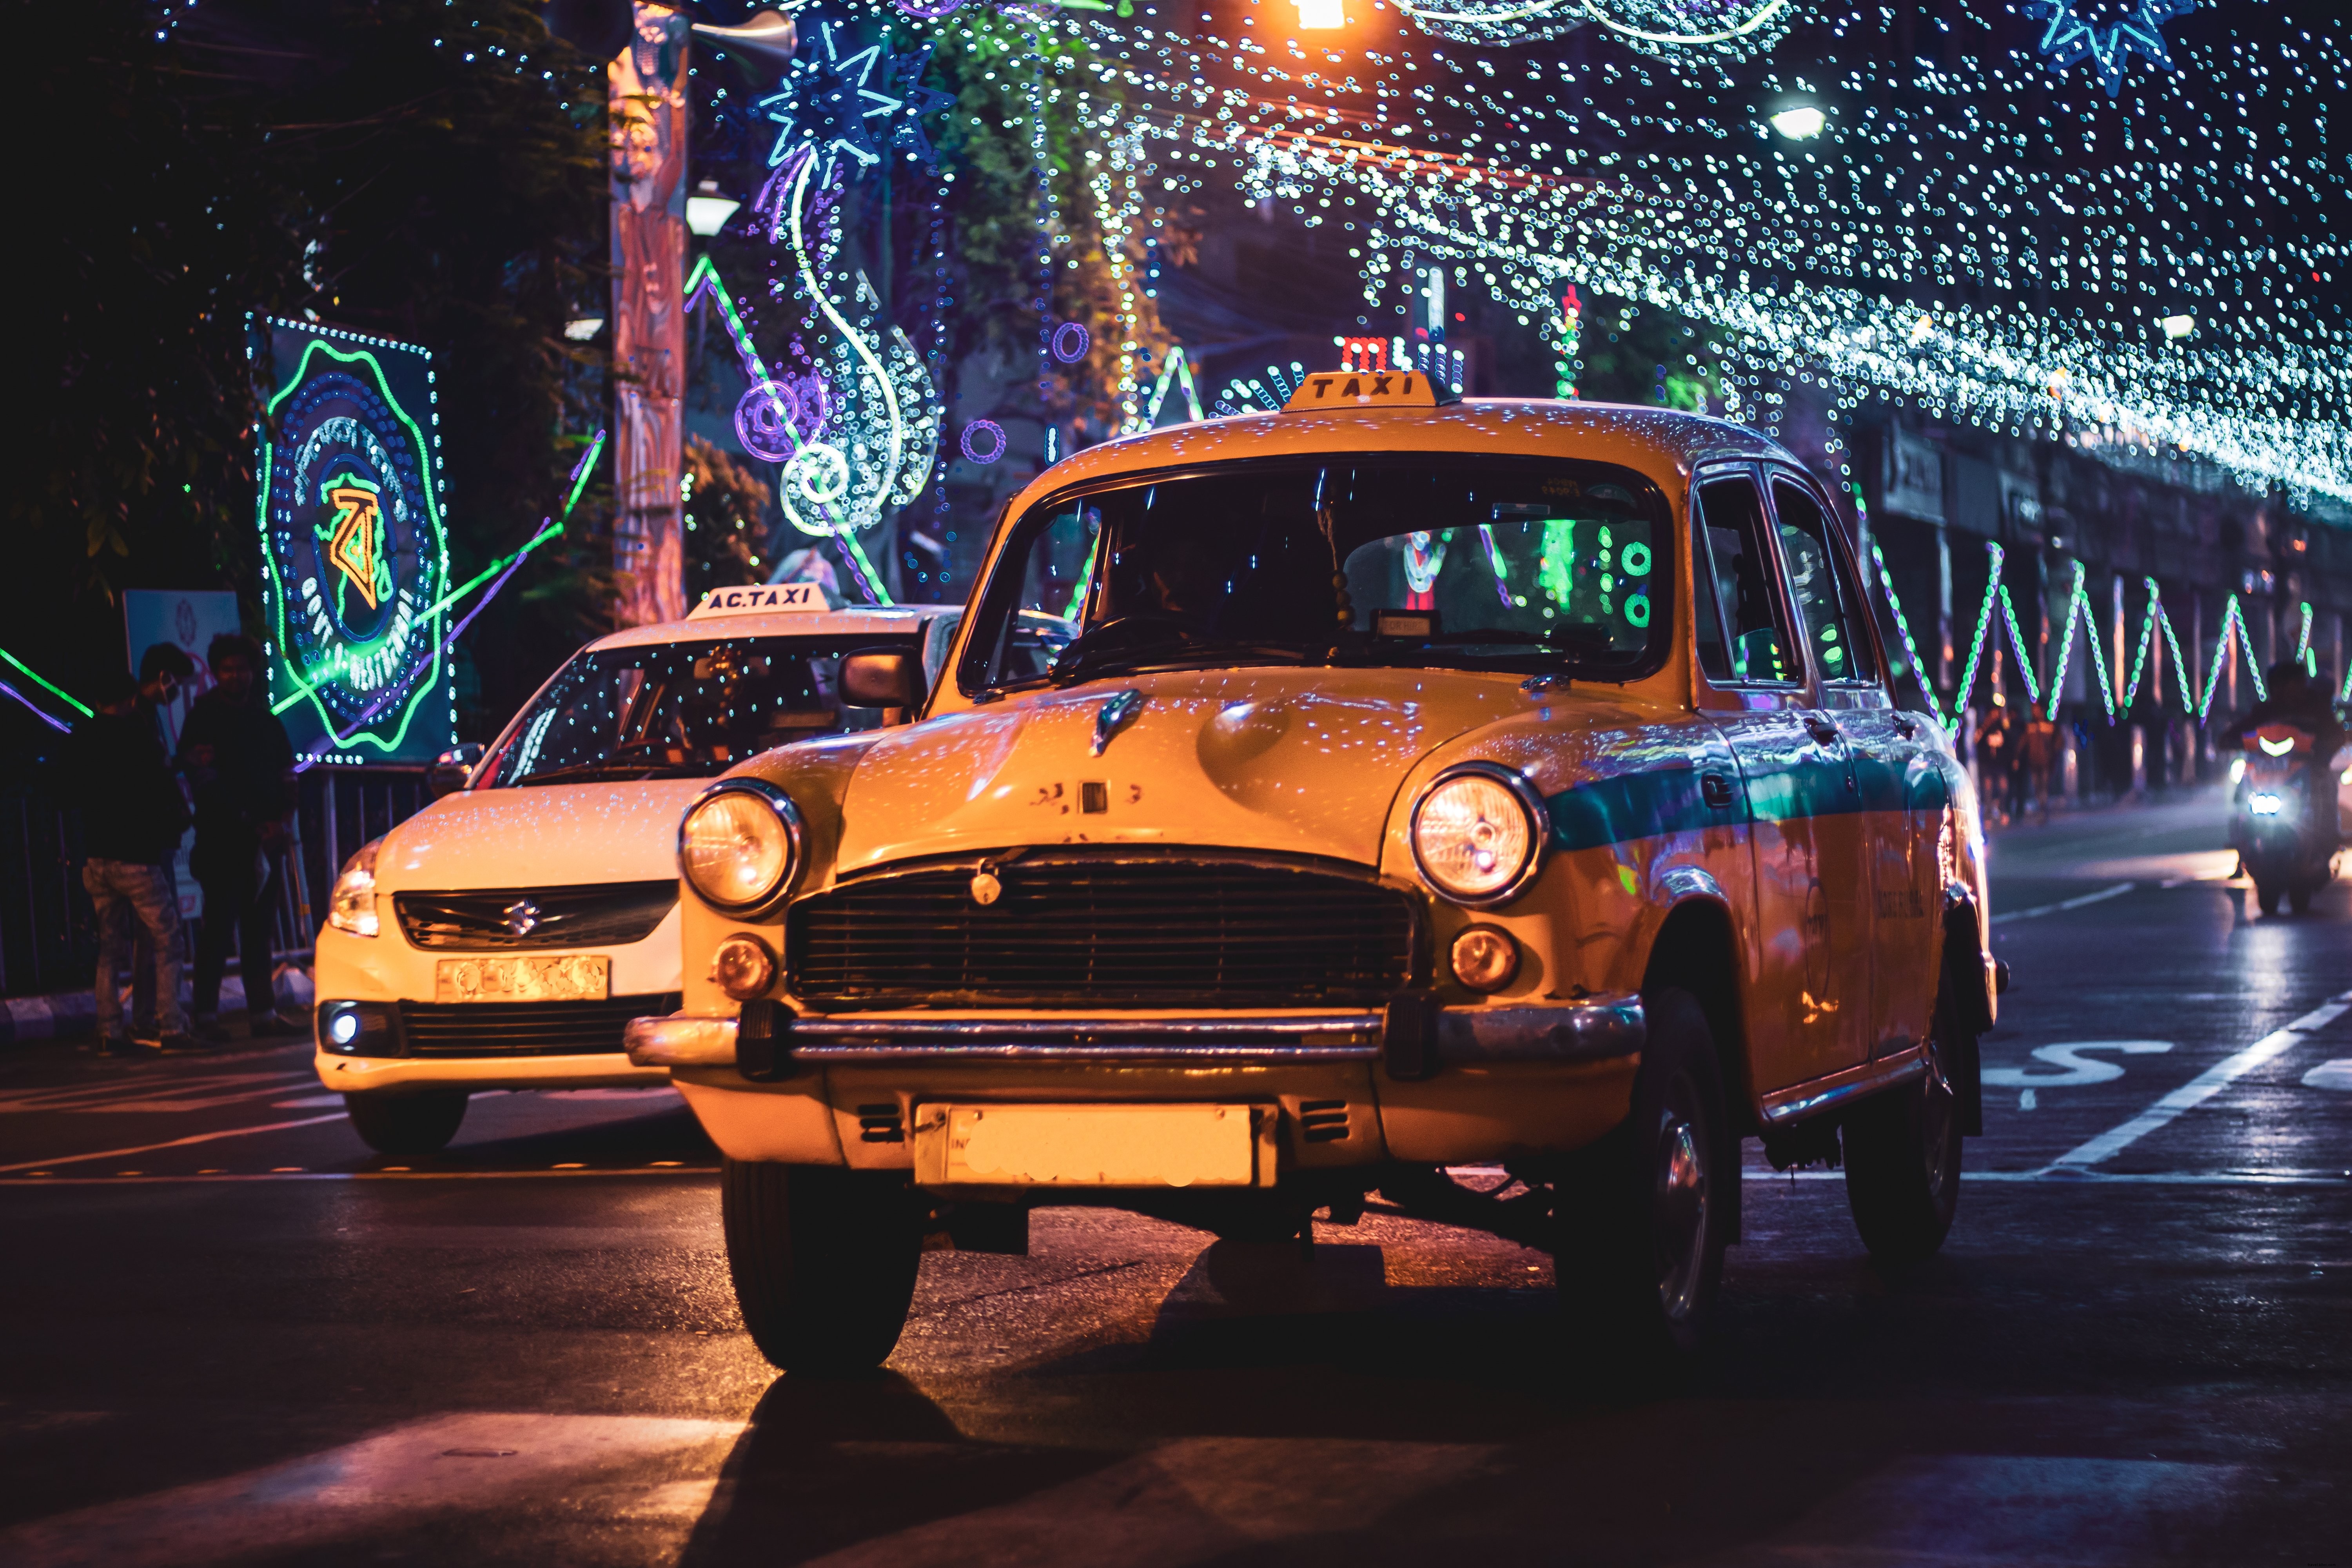 Lampu Taksi Dengan Senar Lampu Di Malam Hari Foto 